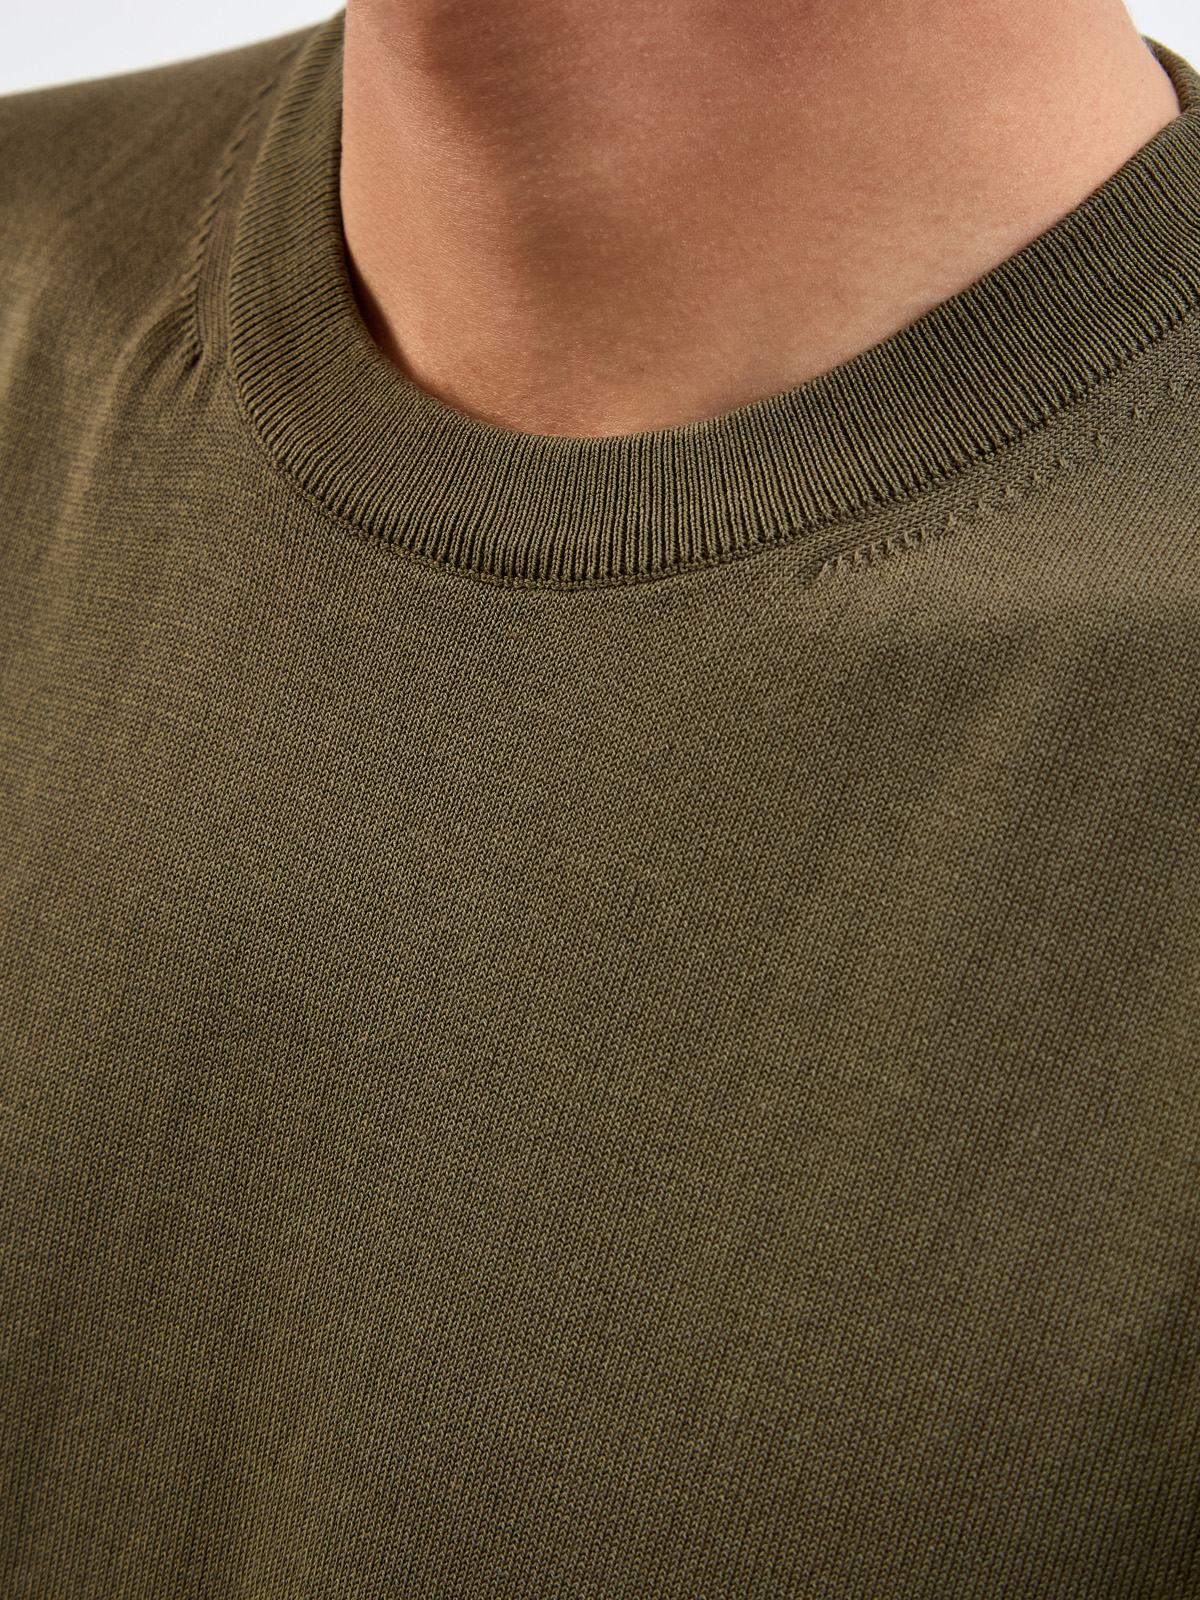 Джемпер из хлопковой пряжи с отделкой английской вязки CANALI, цвет зеленый, размер 48;50;52;54;56;58;60 - фото 5